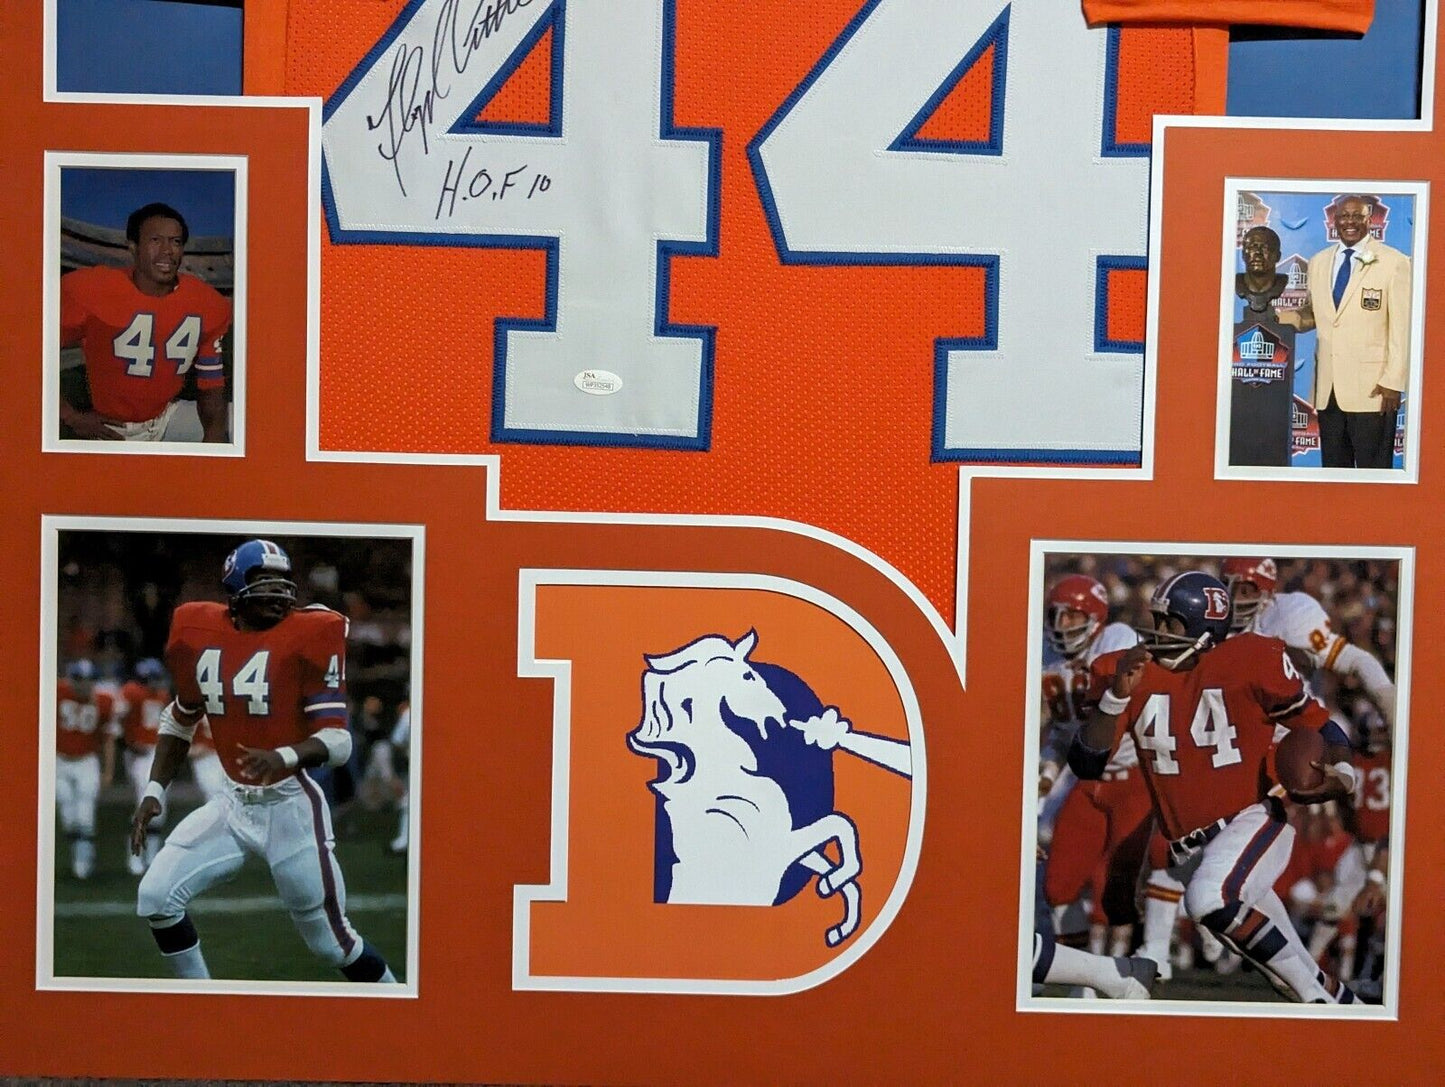 MVP Authentics Framed Denver Broncos Floyd Little Autographed Signed Inscribed Jersey Jsa Coa 540 sports jersey framing , jersey framing